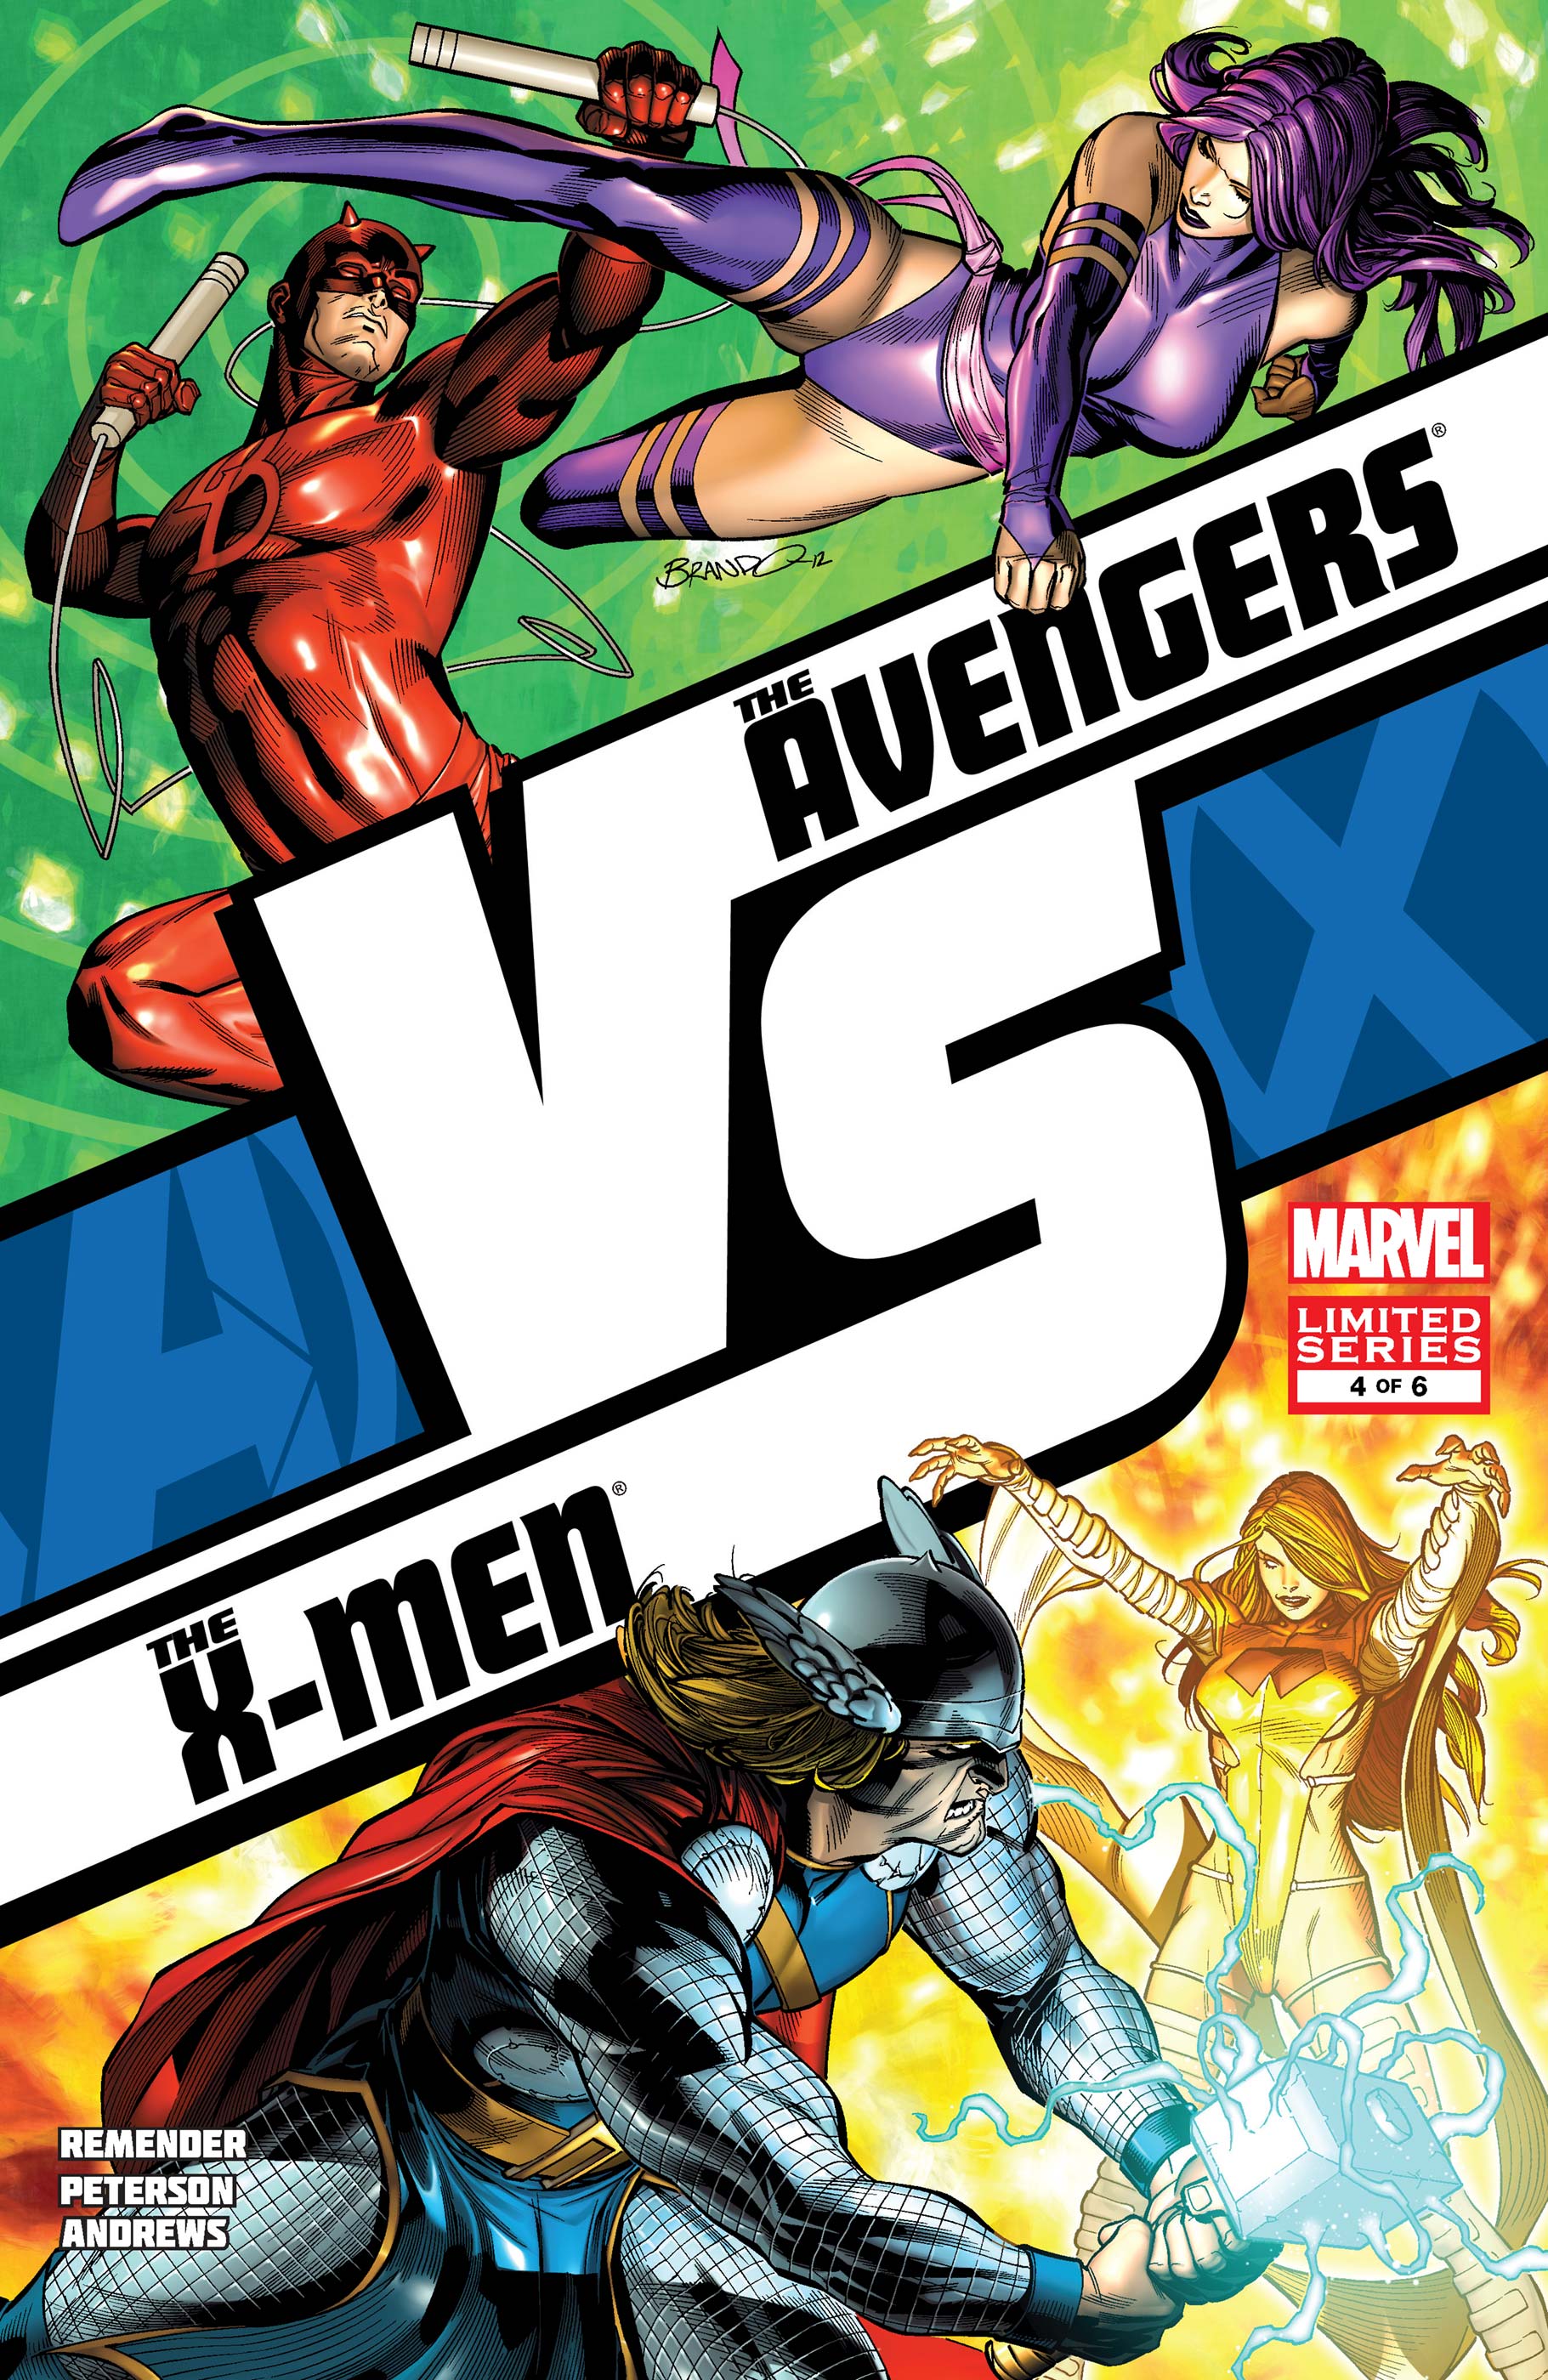 Avengers Vs. X-Men: Versus (2011) #4